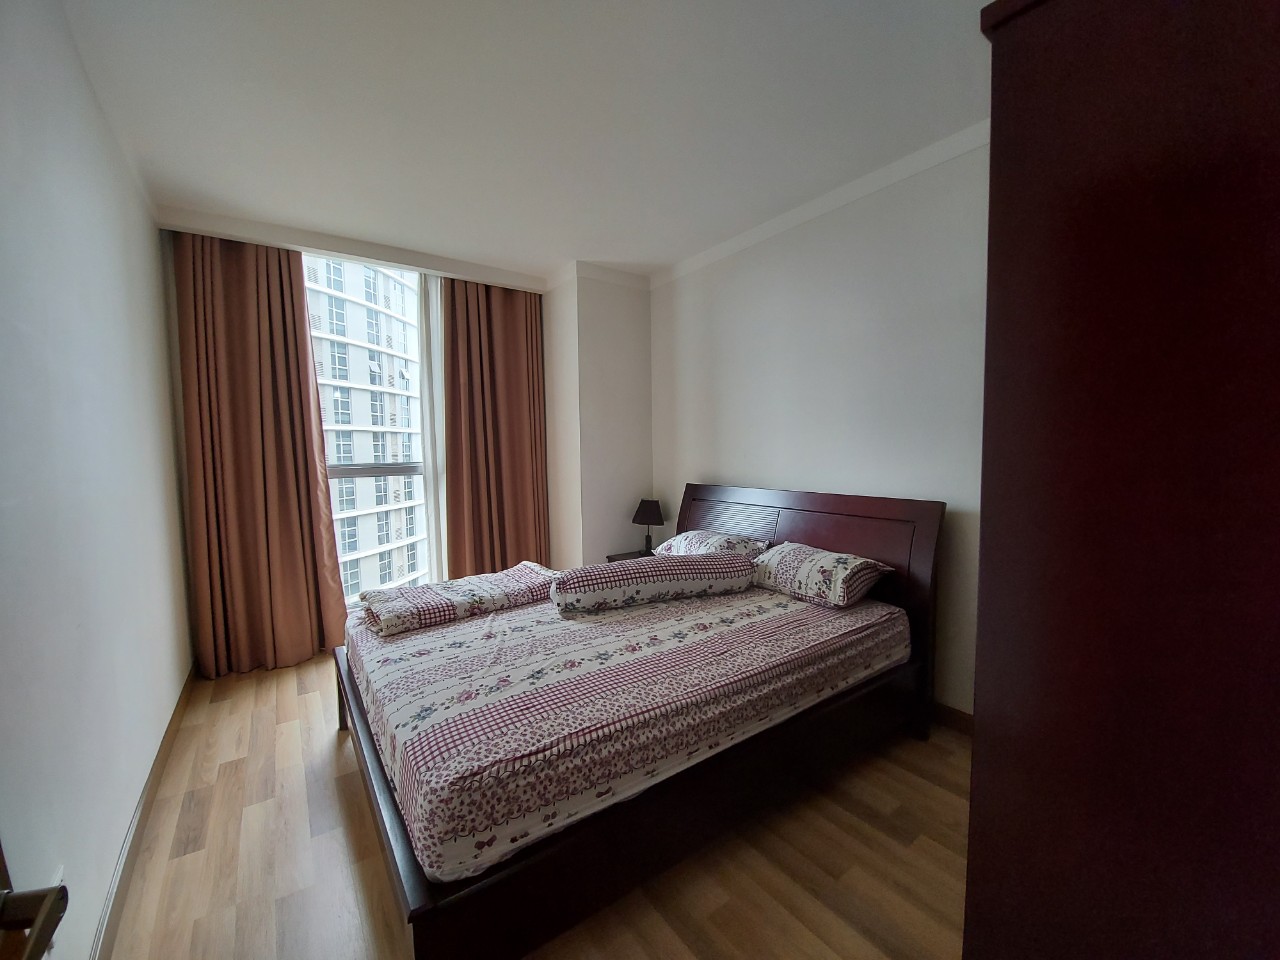 Cho thuê căn hộ 2 phòng ngủ tại Saigon Airport Plaza full tiện nghi - Bluesky 2 chỉ #16 Triệu (Giá tốt nhất thị trường) Tel 0942.811.343 Tony